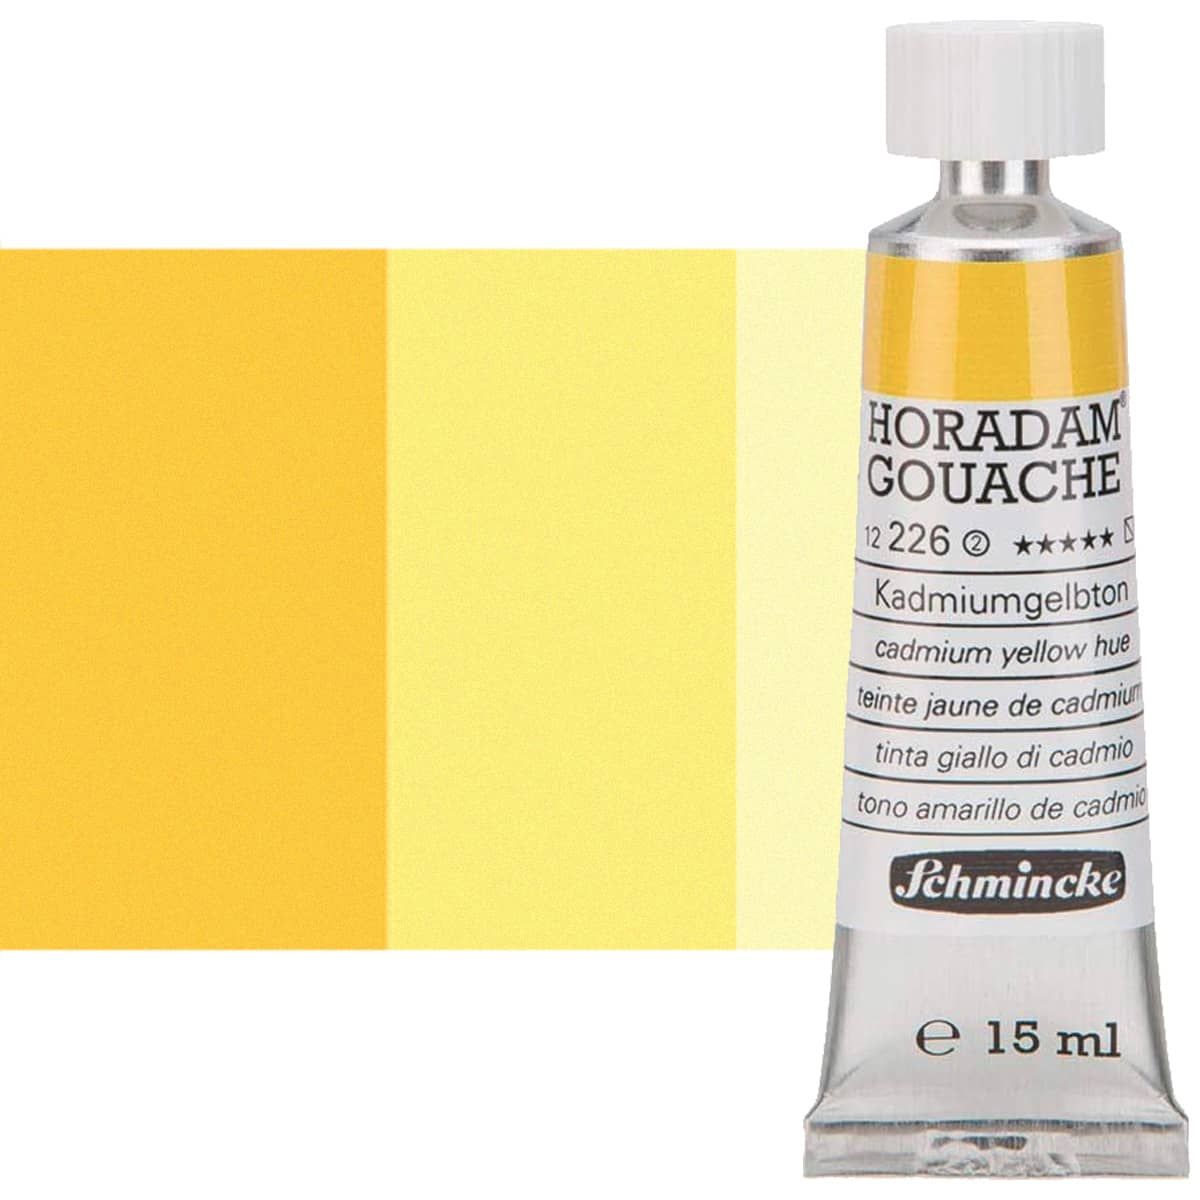 Schmincke Horadam Gouache Cadmium Yellow Hue, 15ml Tube